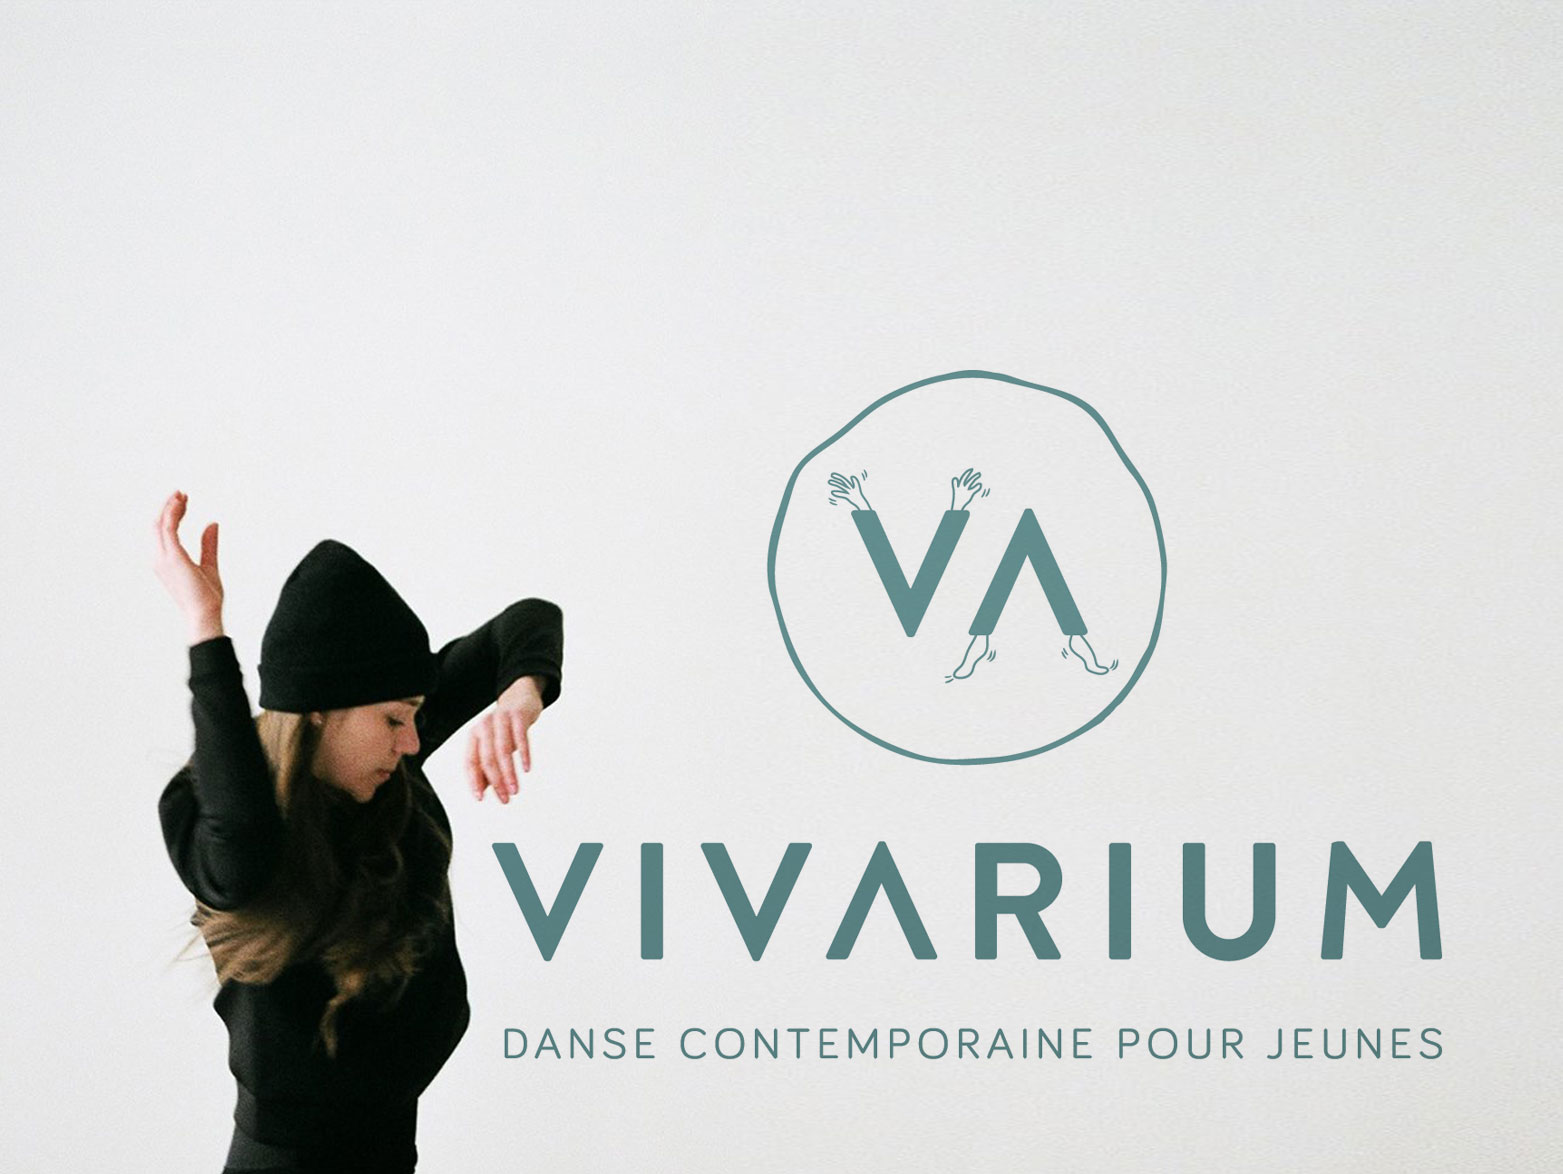 Vivarium danse